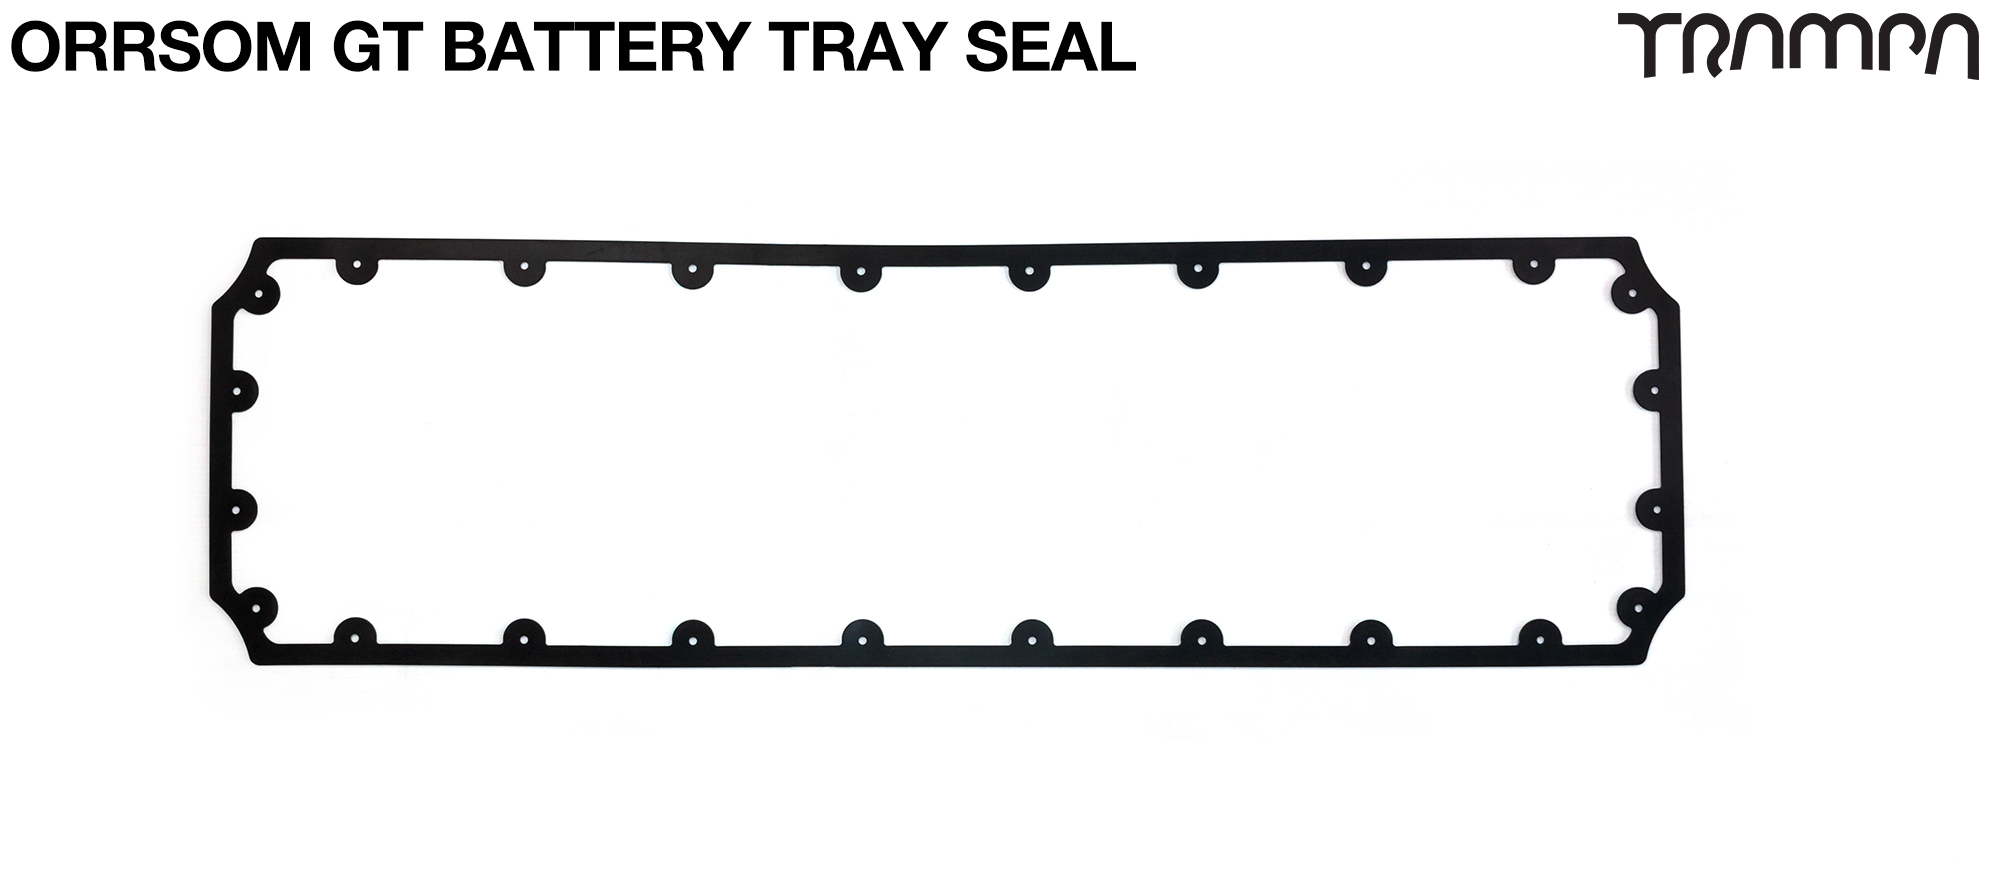 ORRSOM GT Longboard Underboard Battery Tray NBR SEAL 776.82 x 227 x 2mm